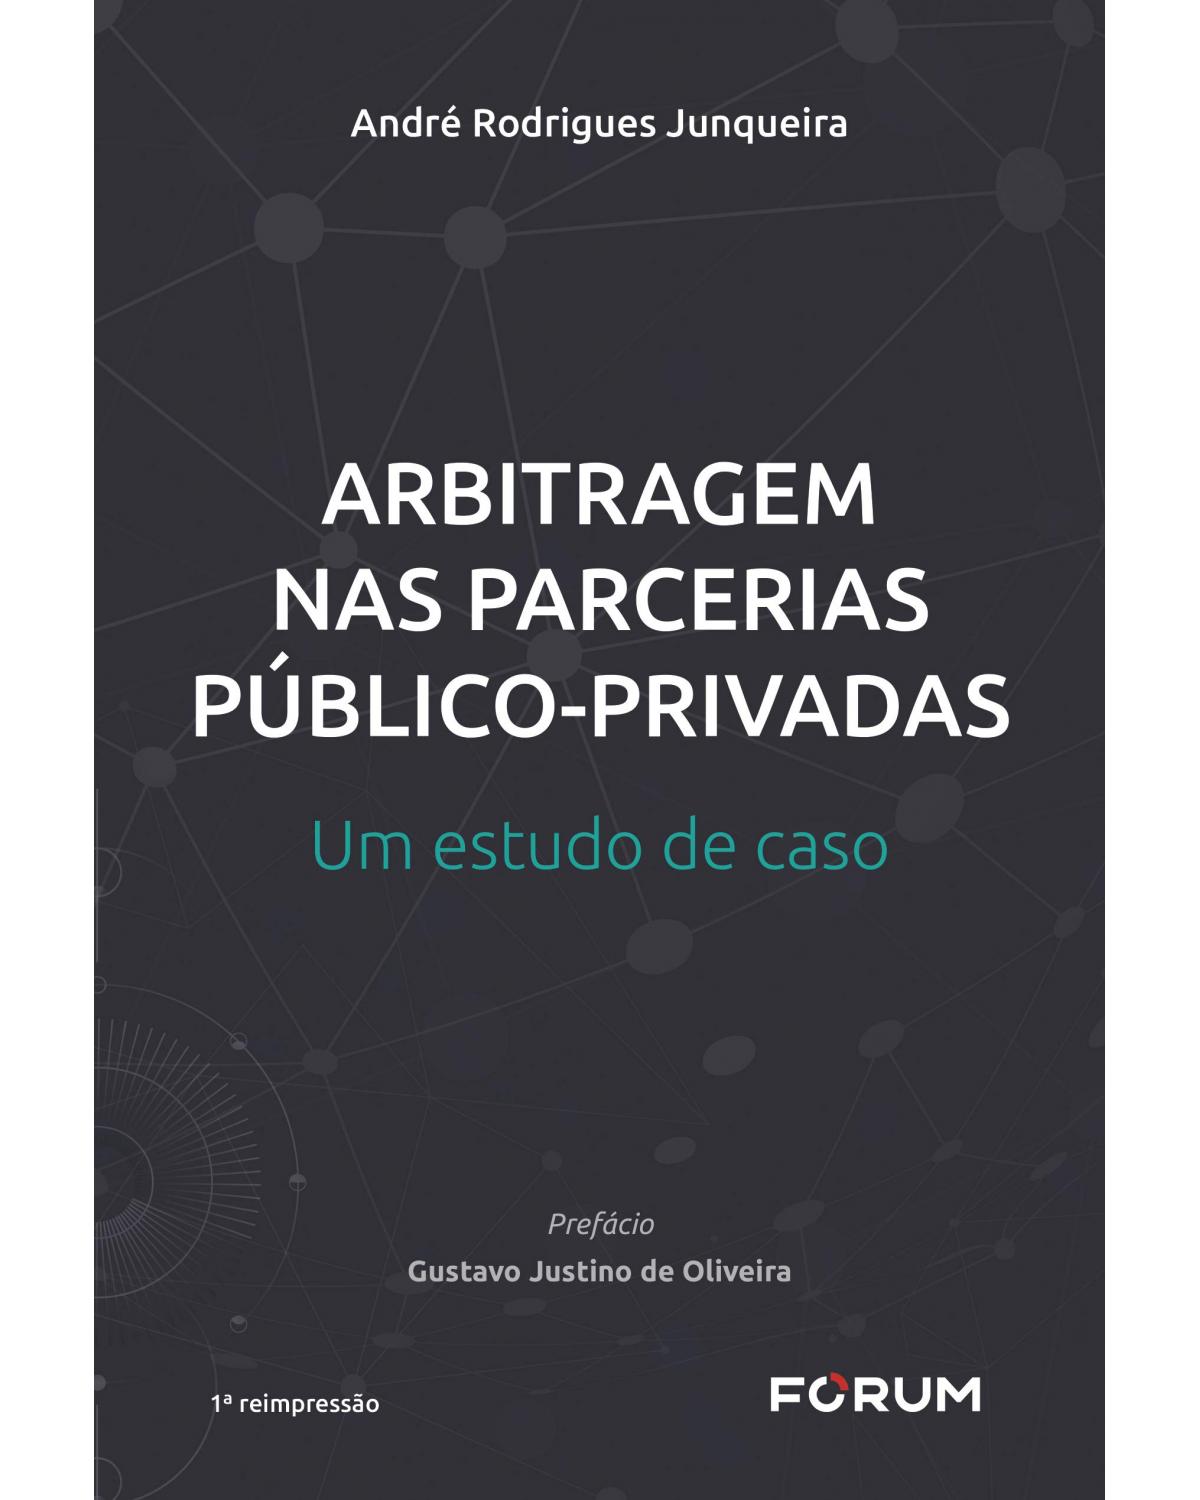 Arbitragem nas parcerias públicos-privadas: Um estudo de caso